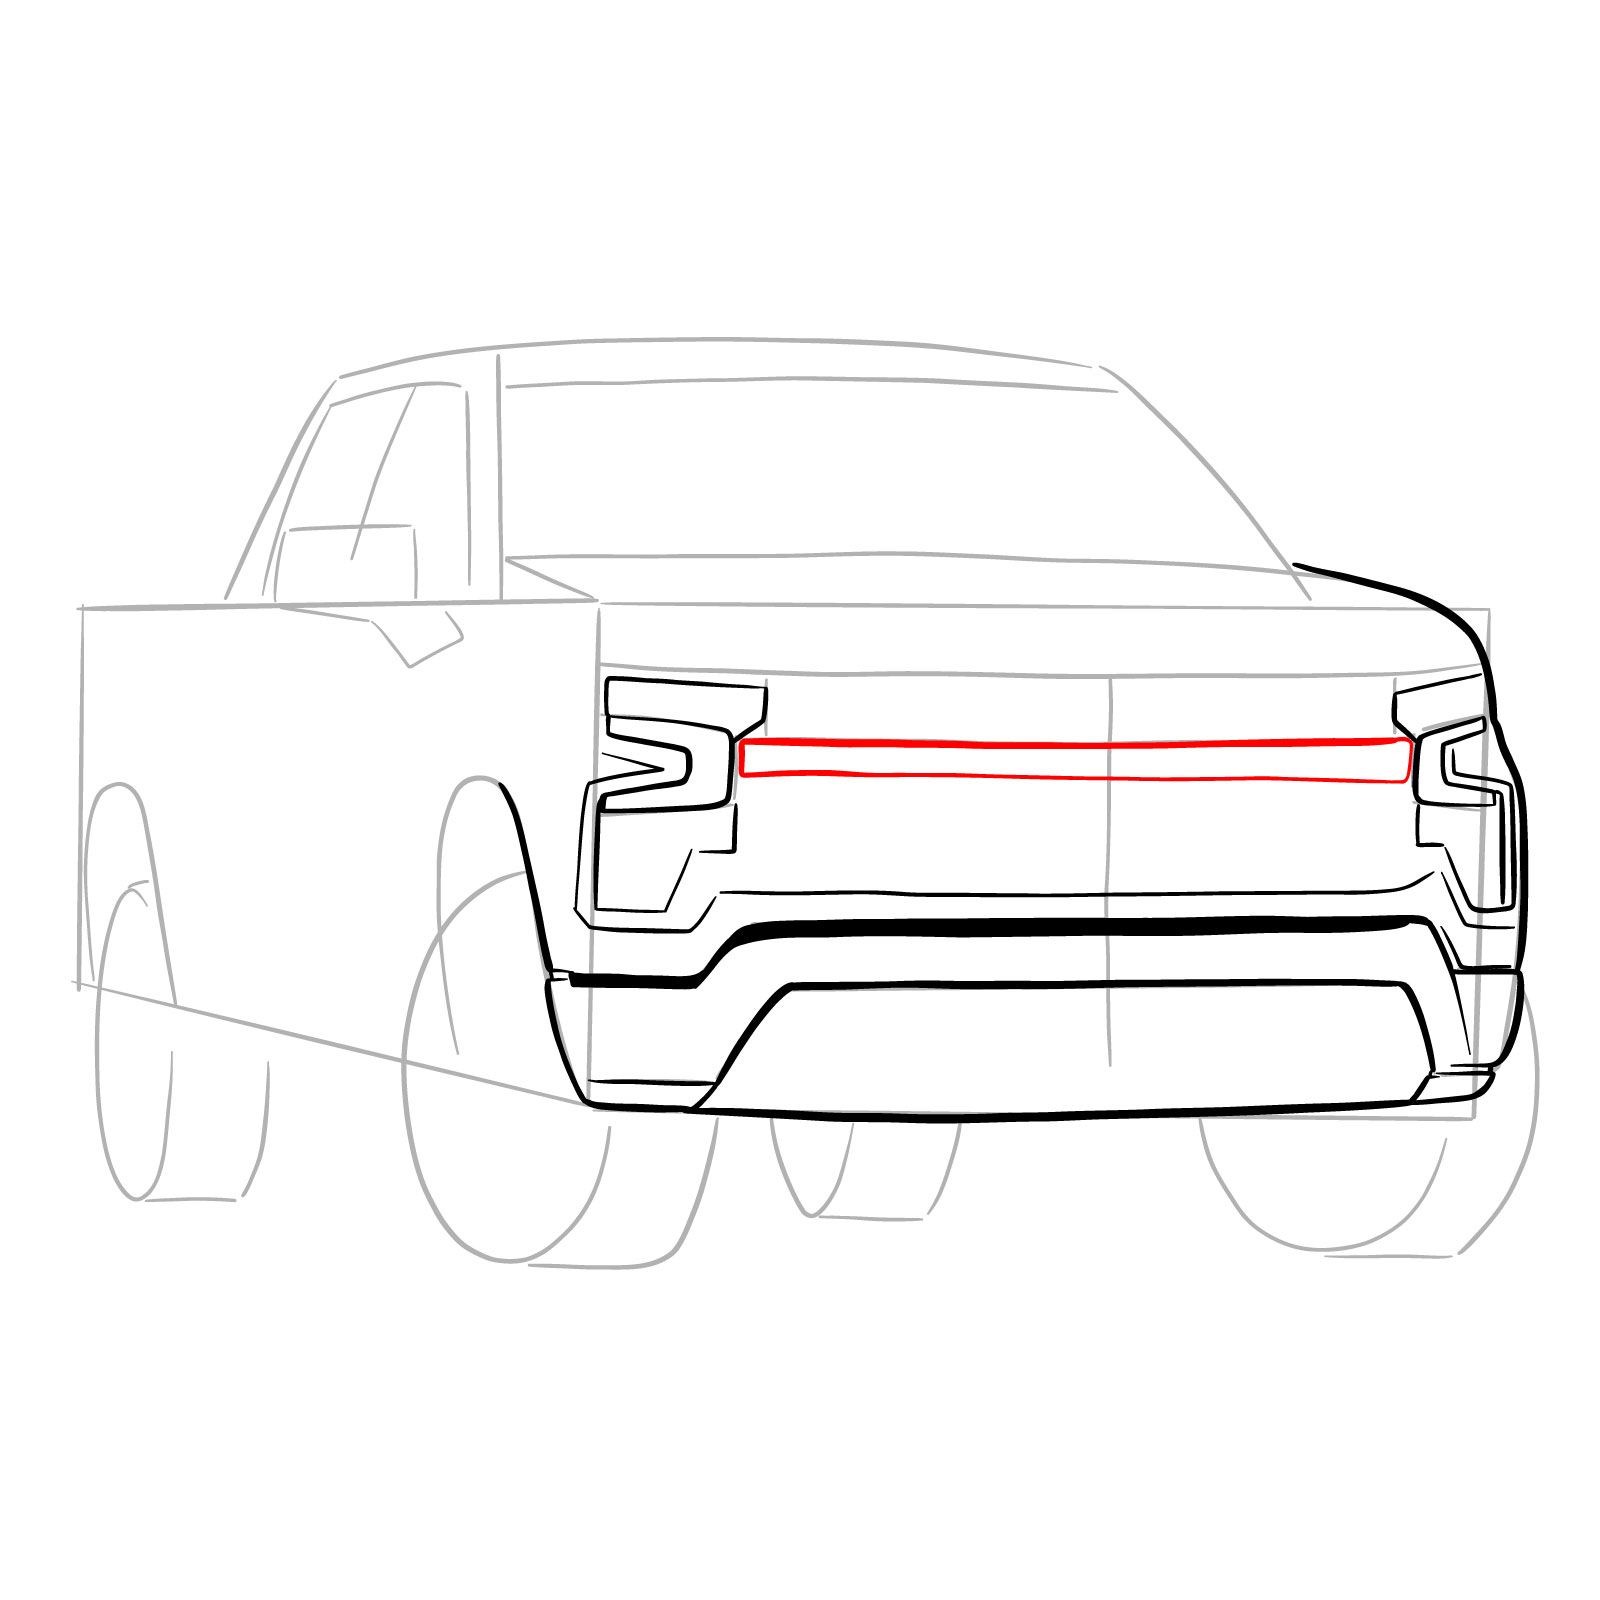 How to draw a 2022 Chevy Silverado - step 12